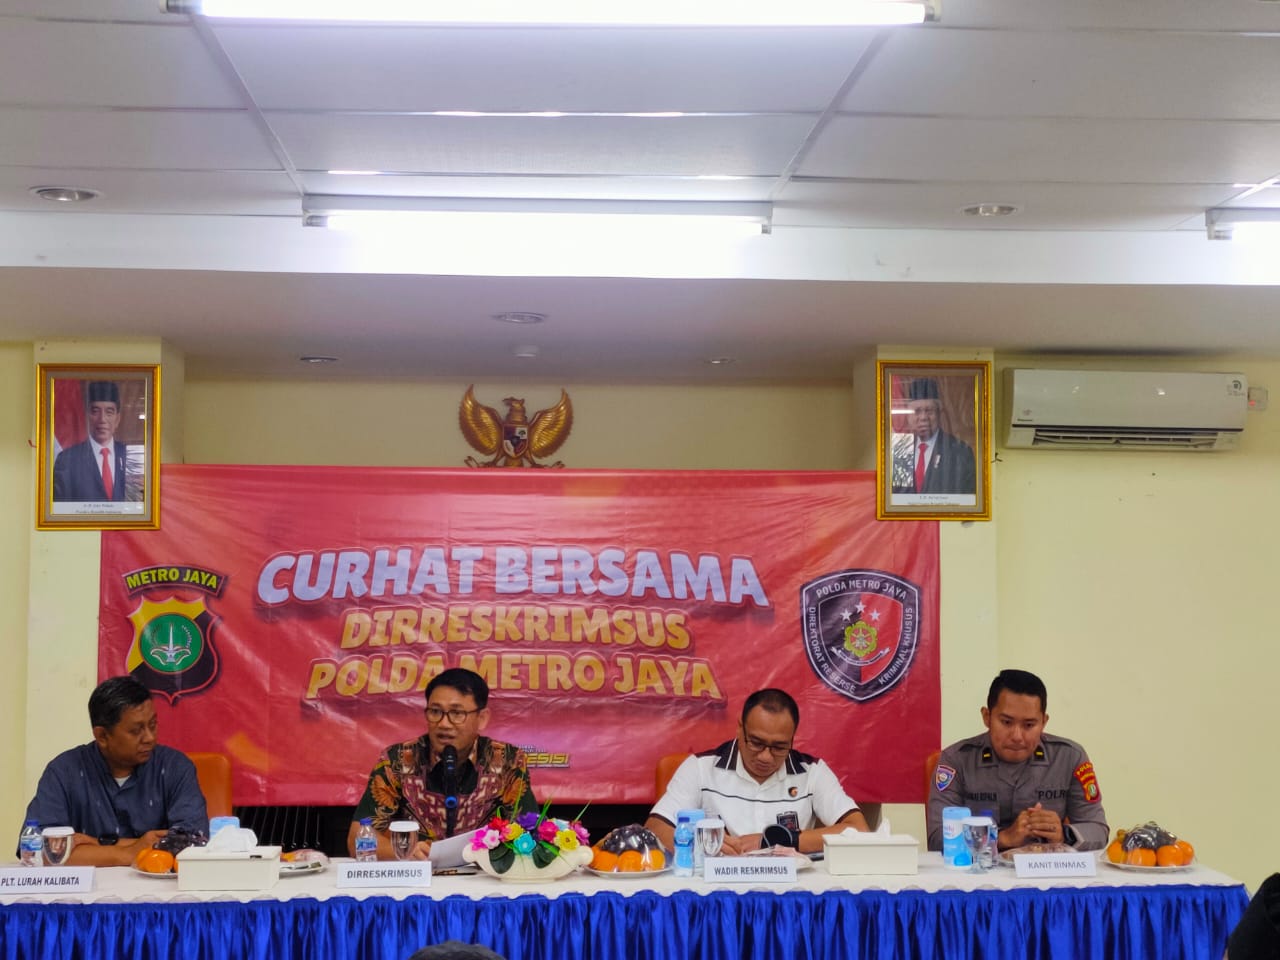 Ditreskrimsus Polda Metro Jaya Gelar Acara Jumat Curhat Bersama Di Kelurahan Kalibata Jakarta Selatan